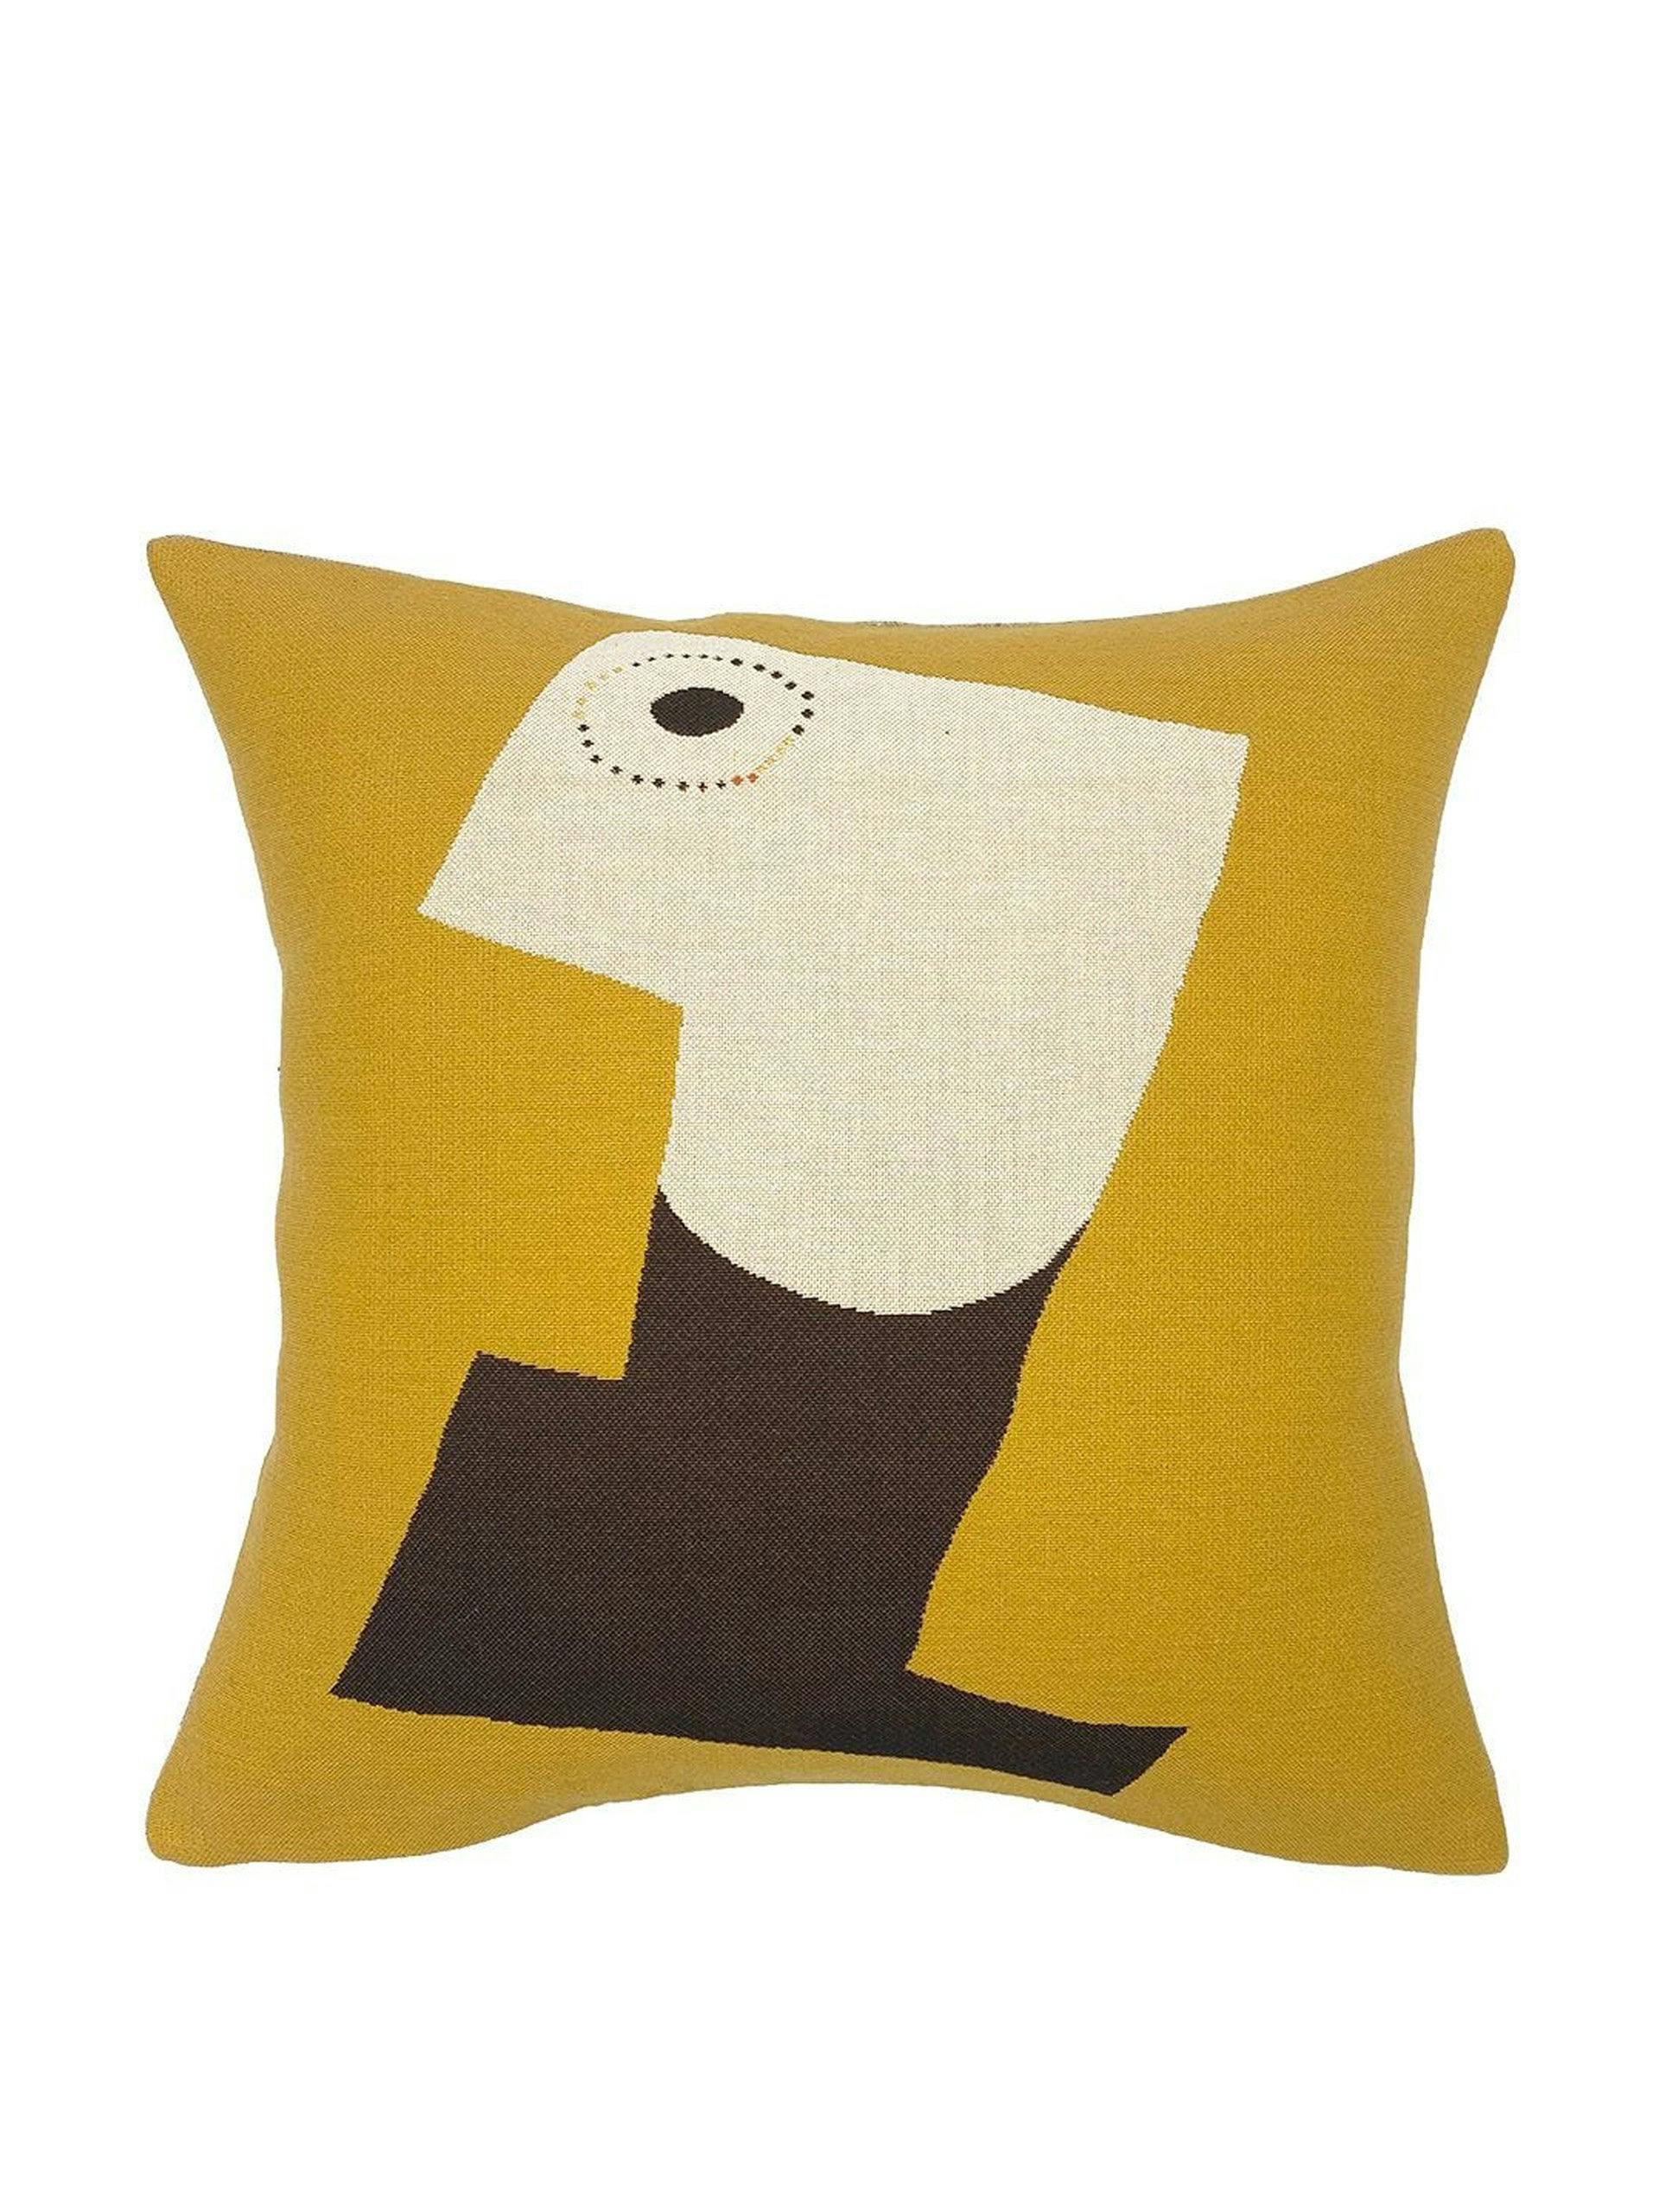 Joan Miro cushion